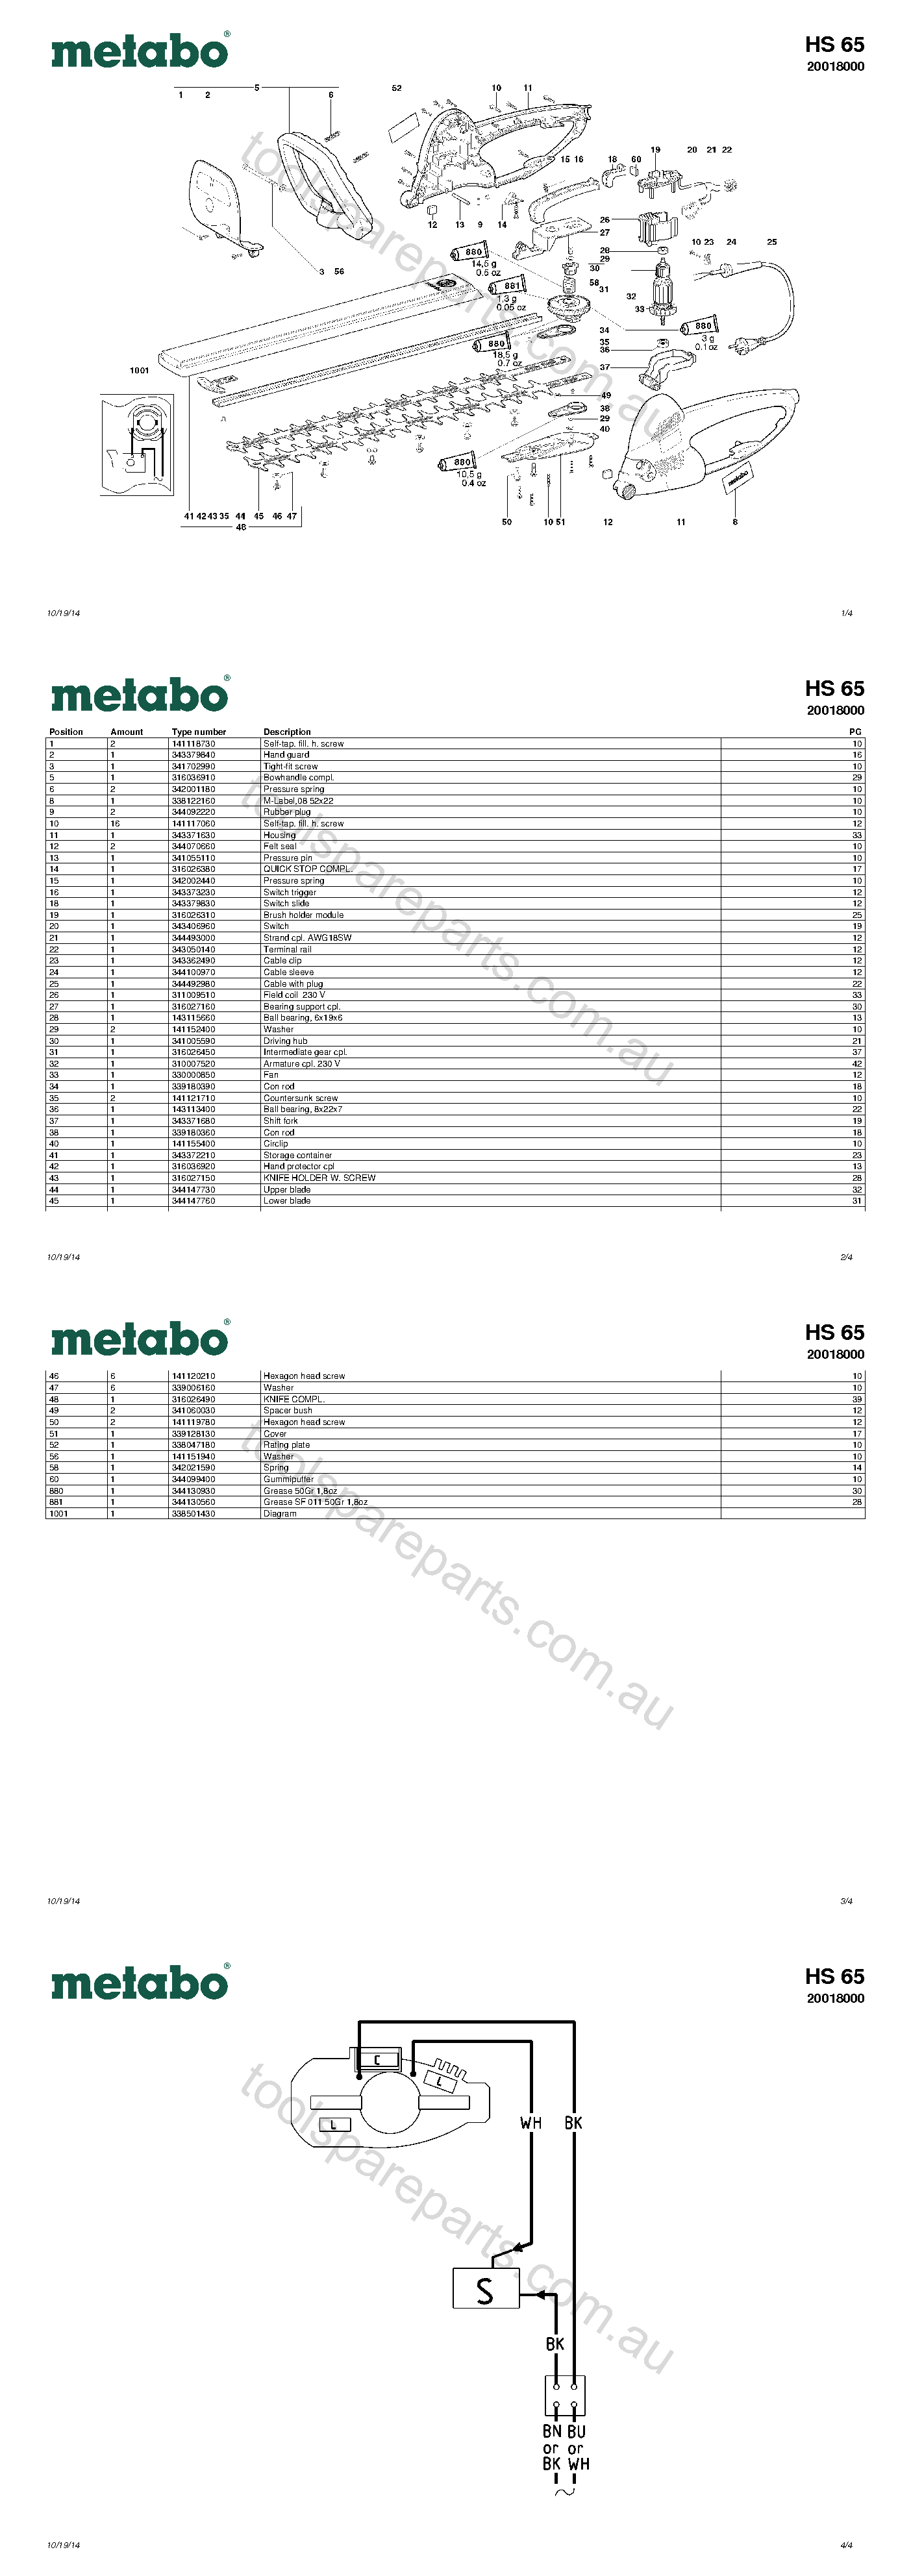 Metabo HS 65 20018000  Diagram 1